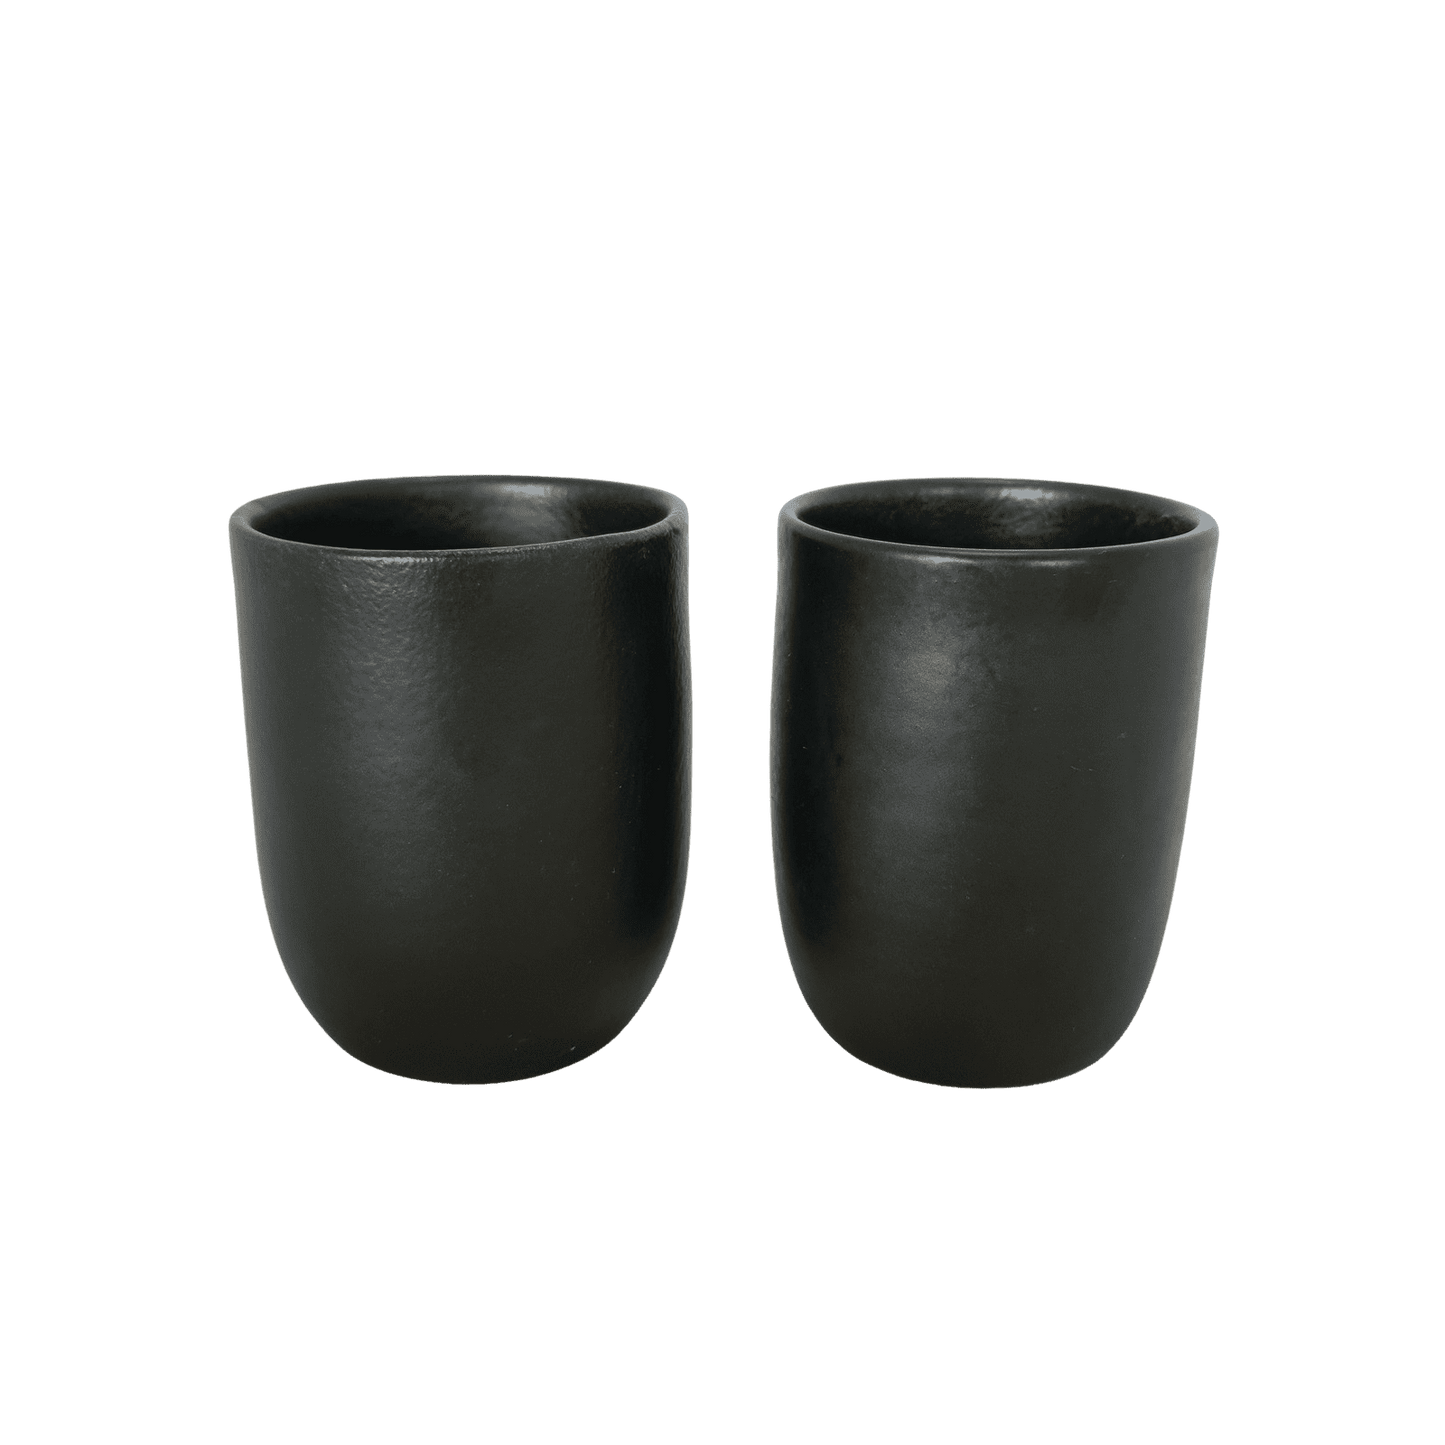 MAT krus i keramik - 10 cm høj